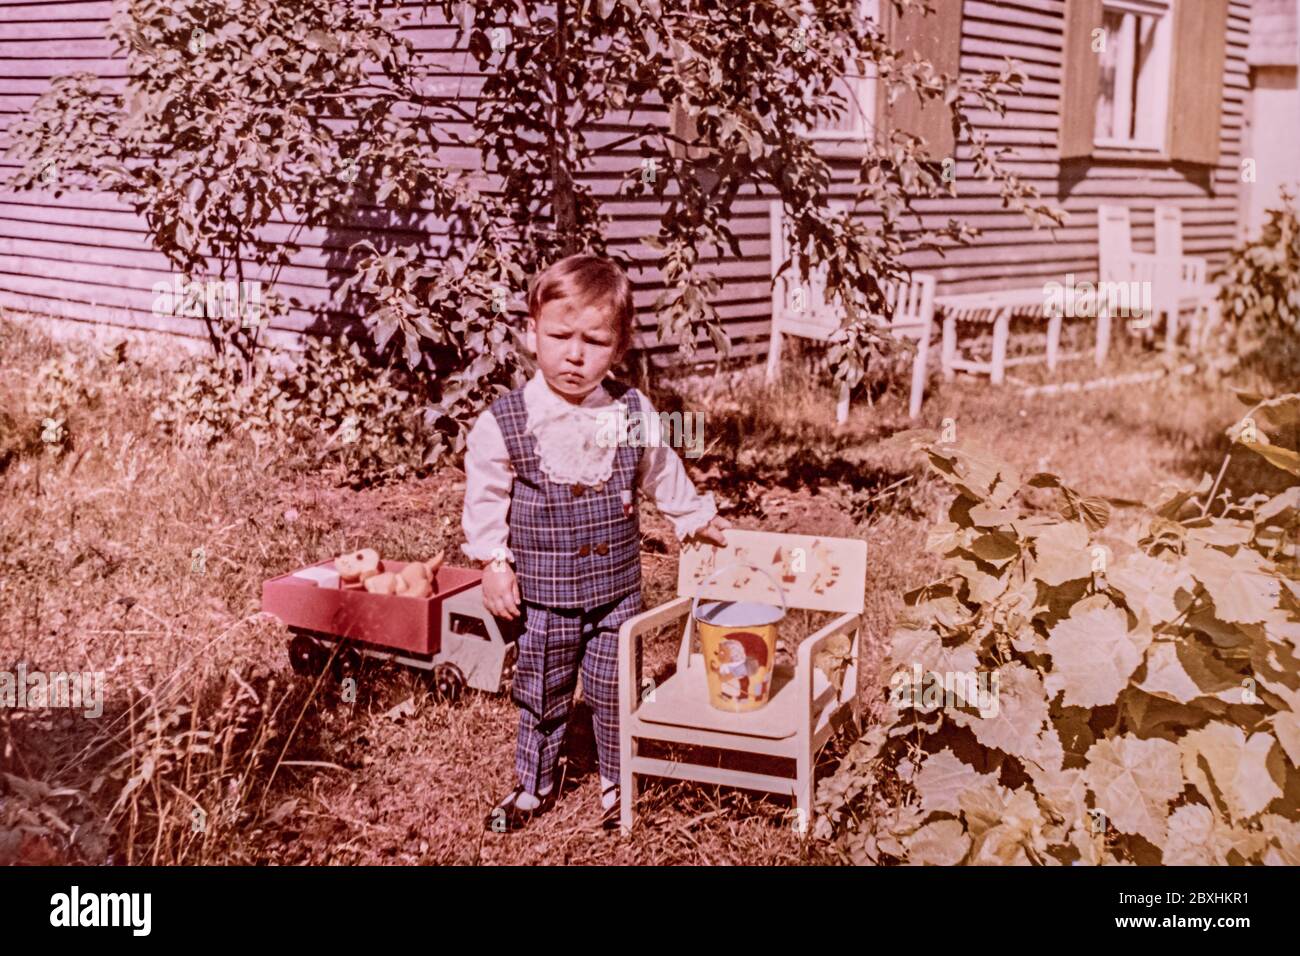 Lettland - UM 1969s: Porträt eines Jungen im Garten. Vintage Farbfotografie Stockfoto